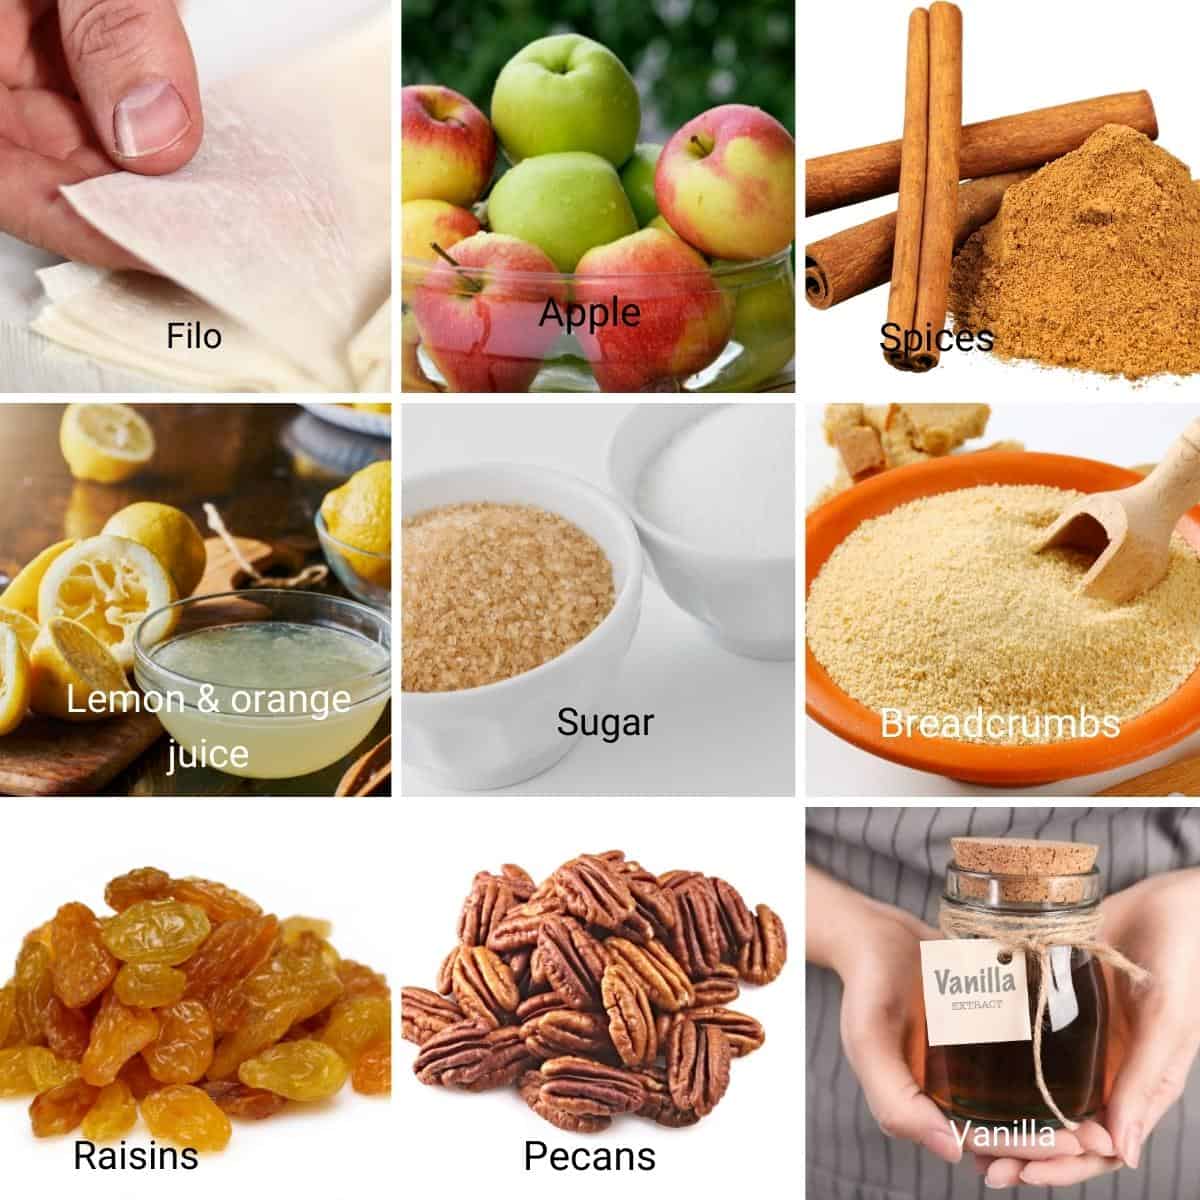 Ingredients for making apple strudel.